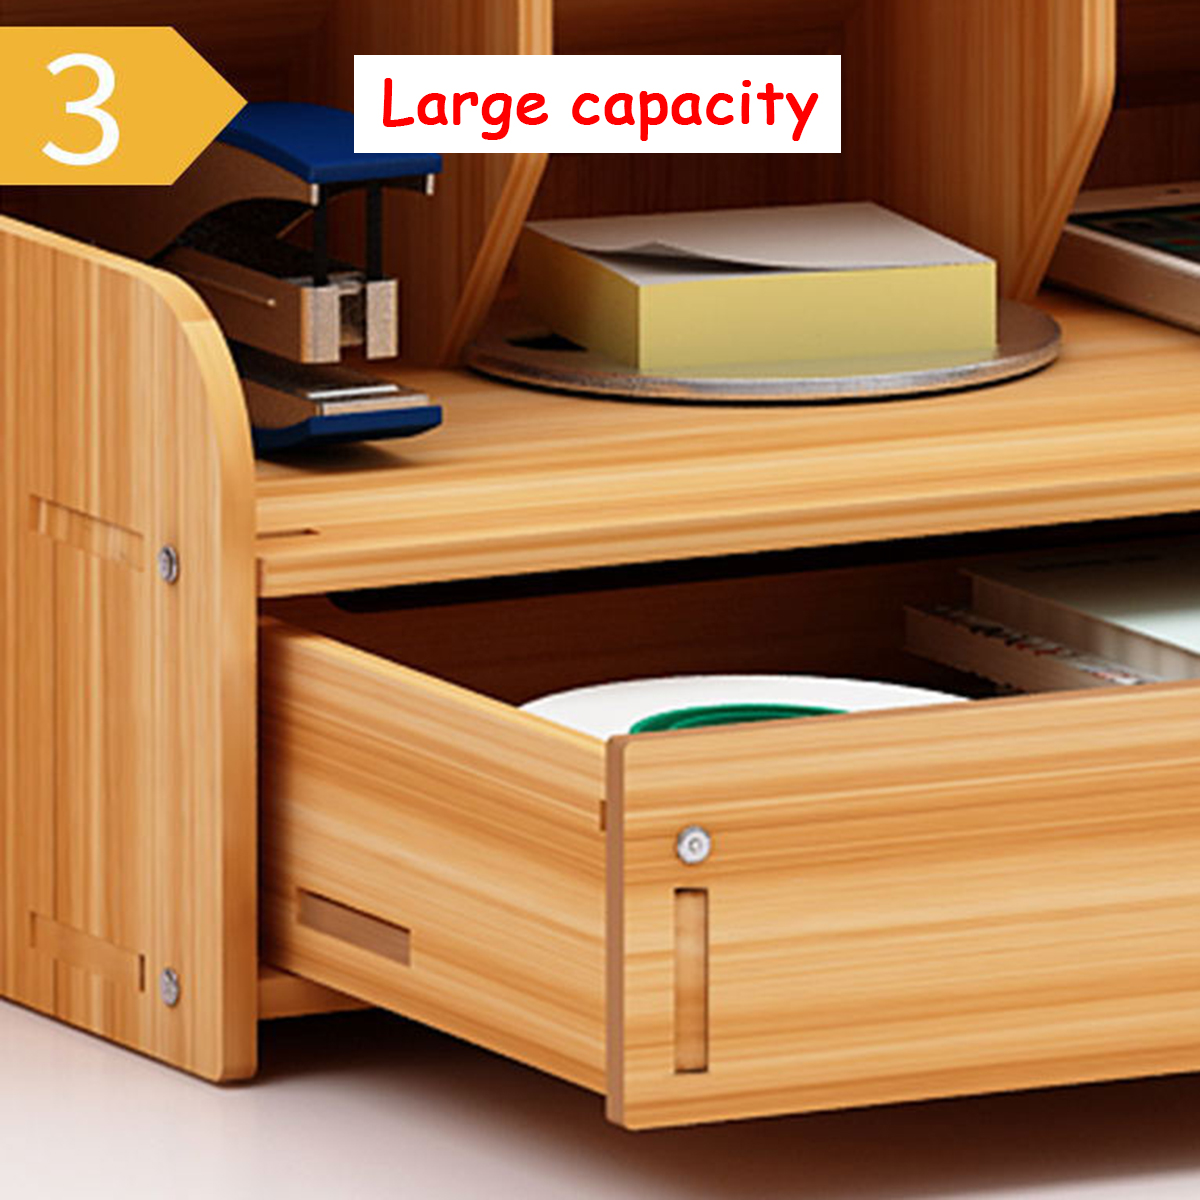 Wooden-Desk-Organizer-Multi-Functional-DIY-Pen-Holder-Box-Cell-Phone-Holder-Desktop-Stationary-Home--1585522-6